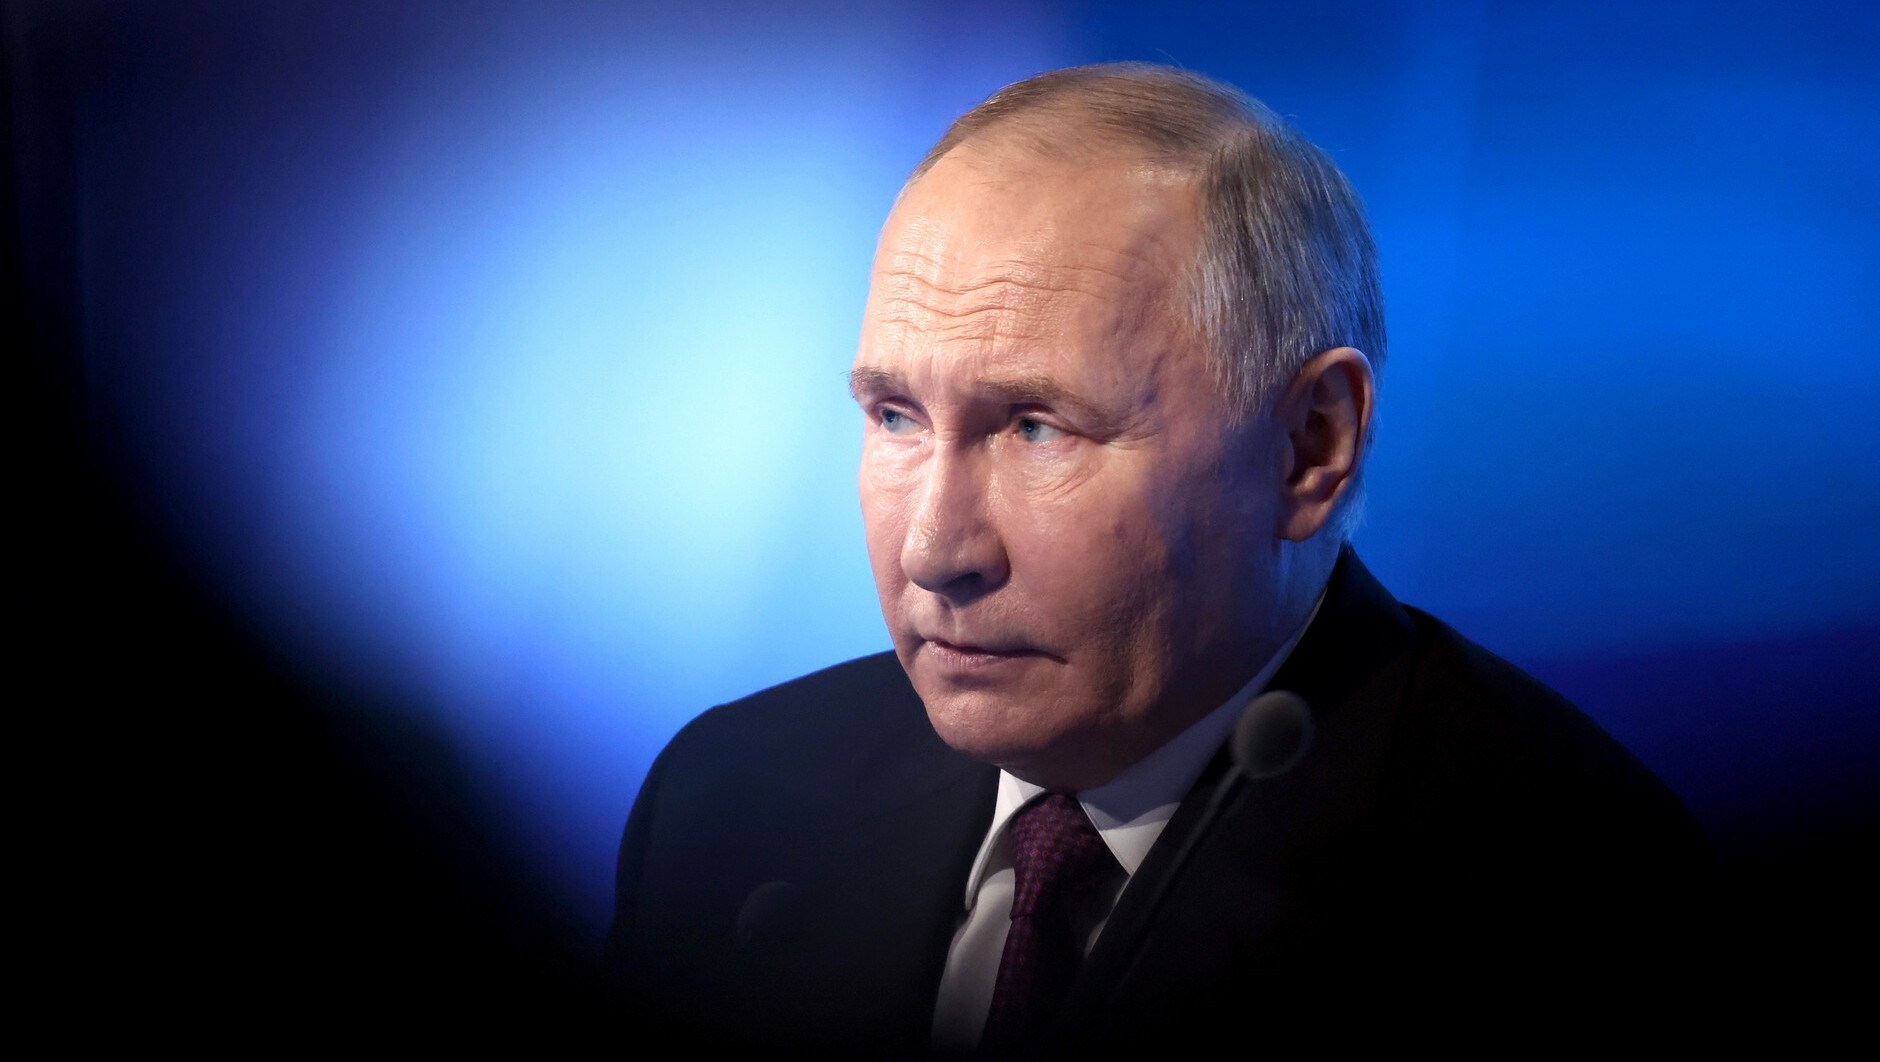 Путин: Россия хочет урегулировать конфликт на Украине мирно и открыта к диалогу